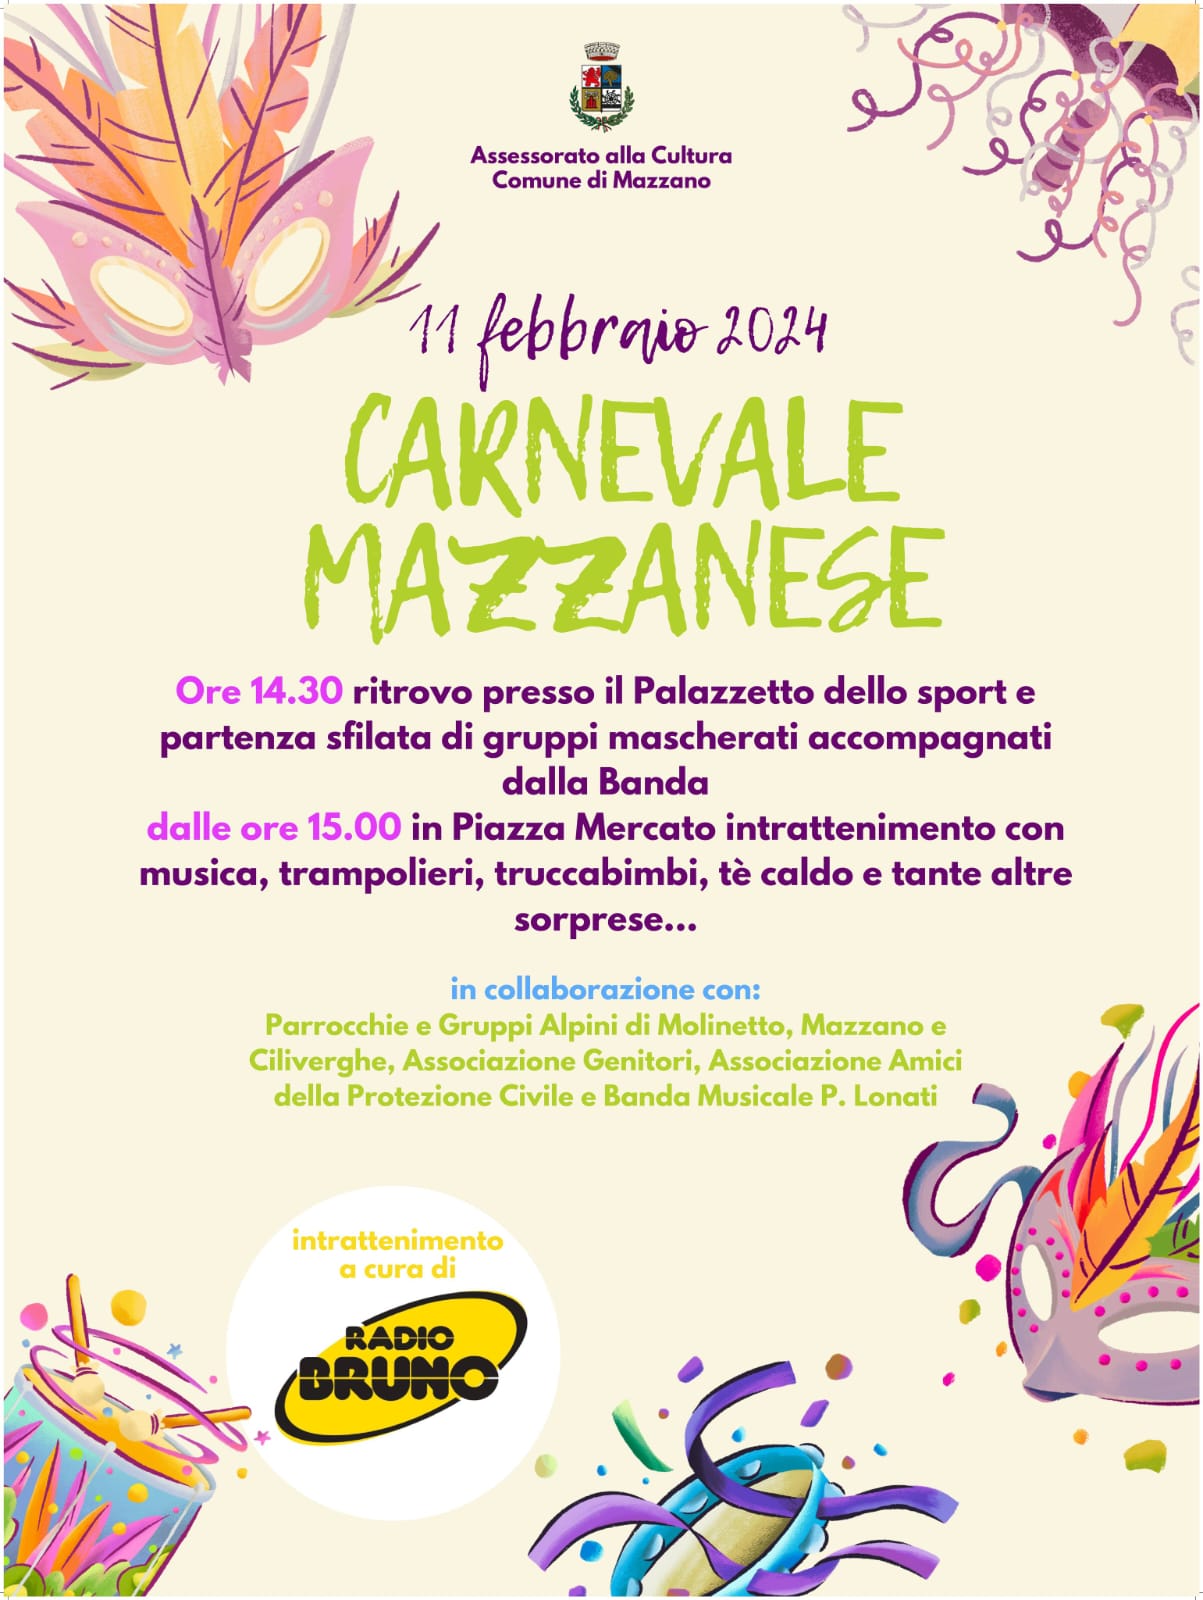 Domenica 11 febbraio, il Carnevale Mazzanese con Radio Bruno!